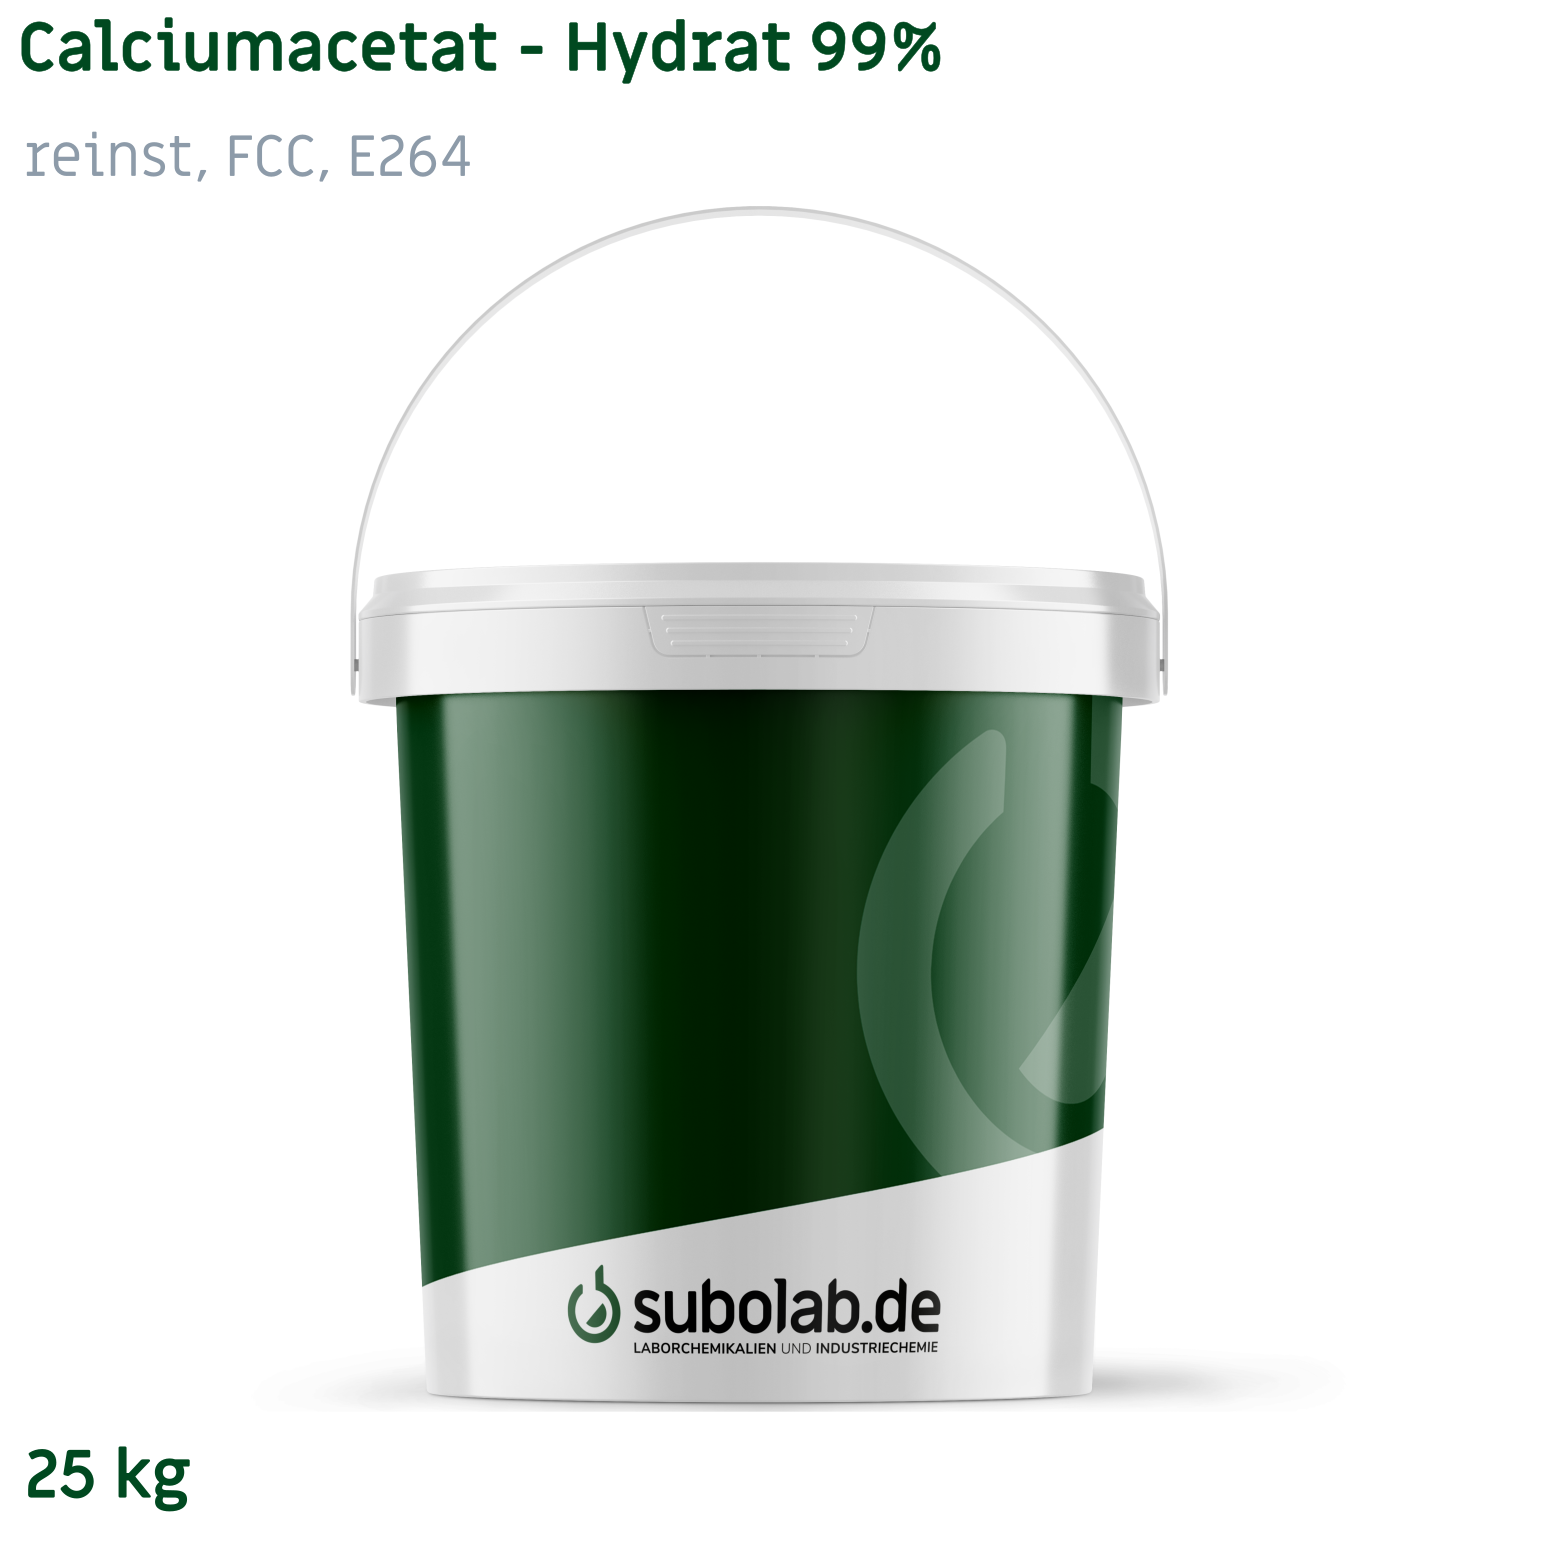 Bild von Calciumacetat - Hydrat 99% reinst, FCC, E263 (25 kg)